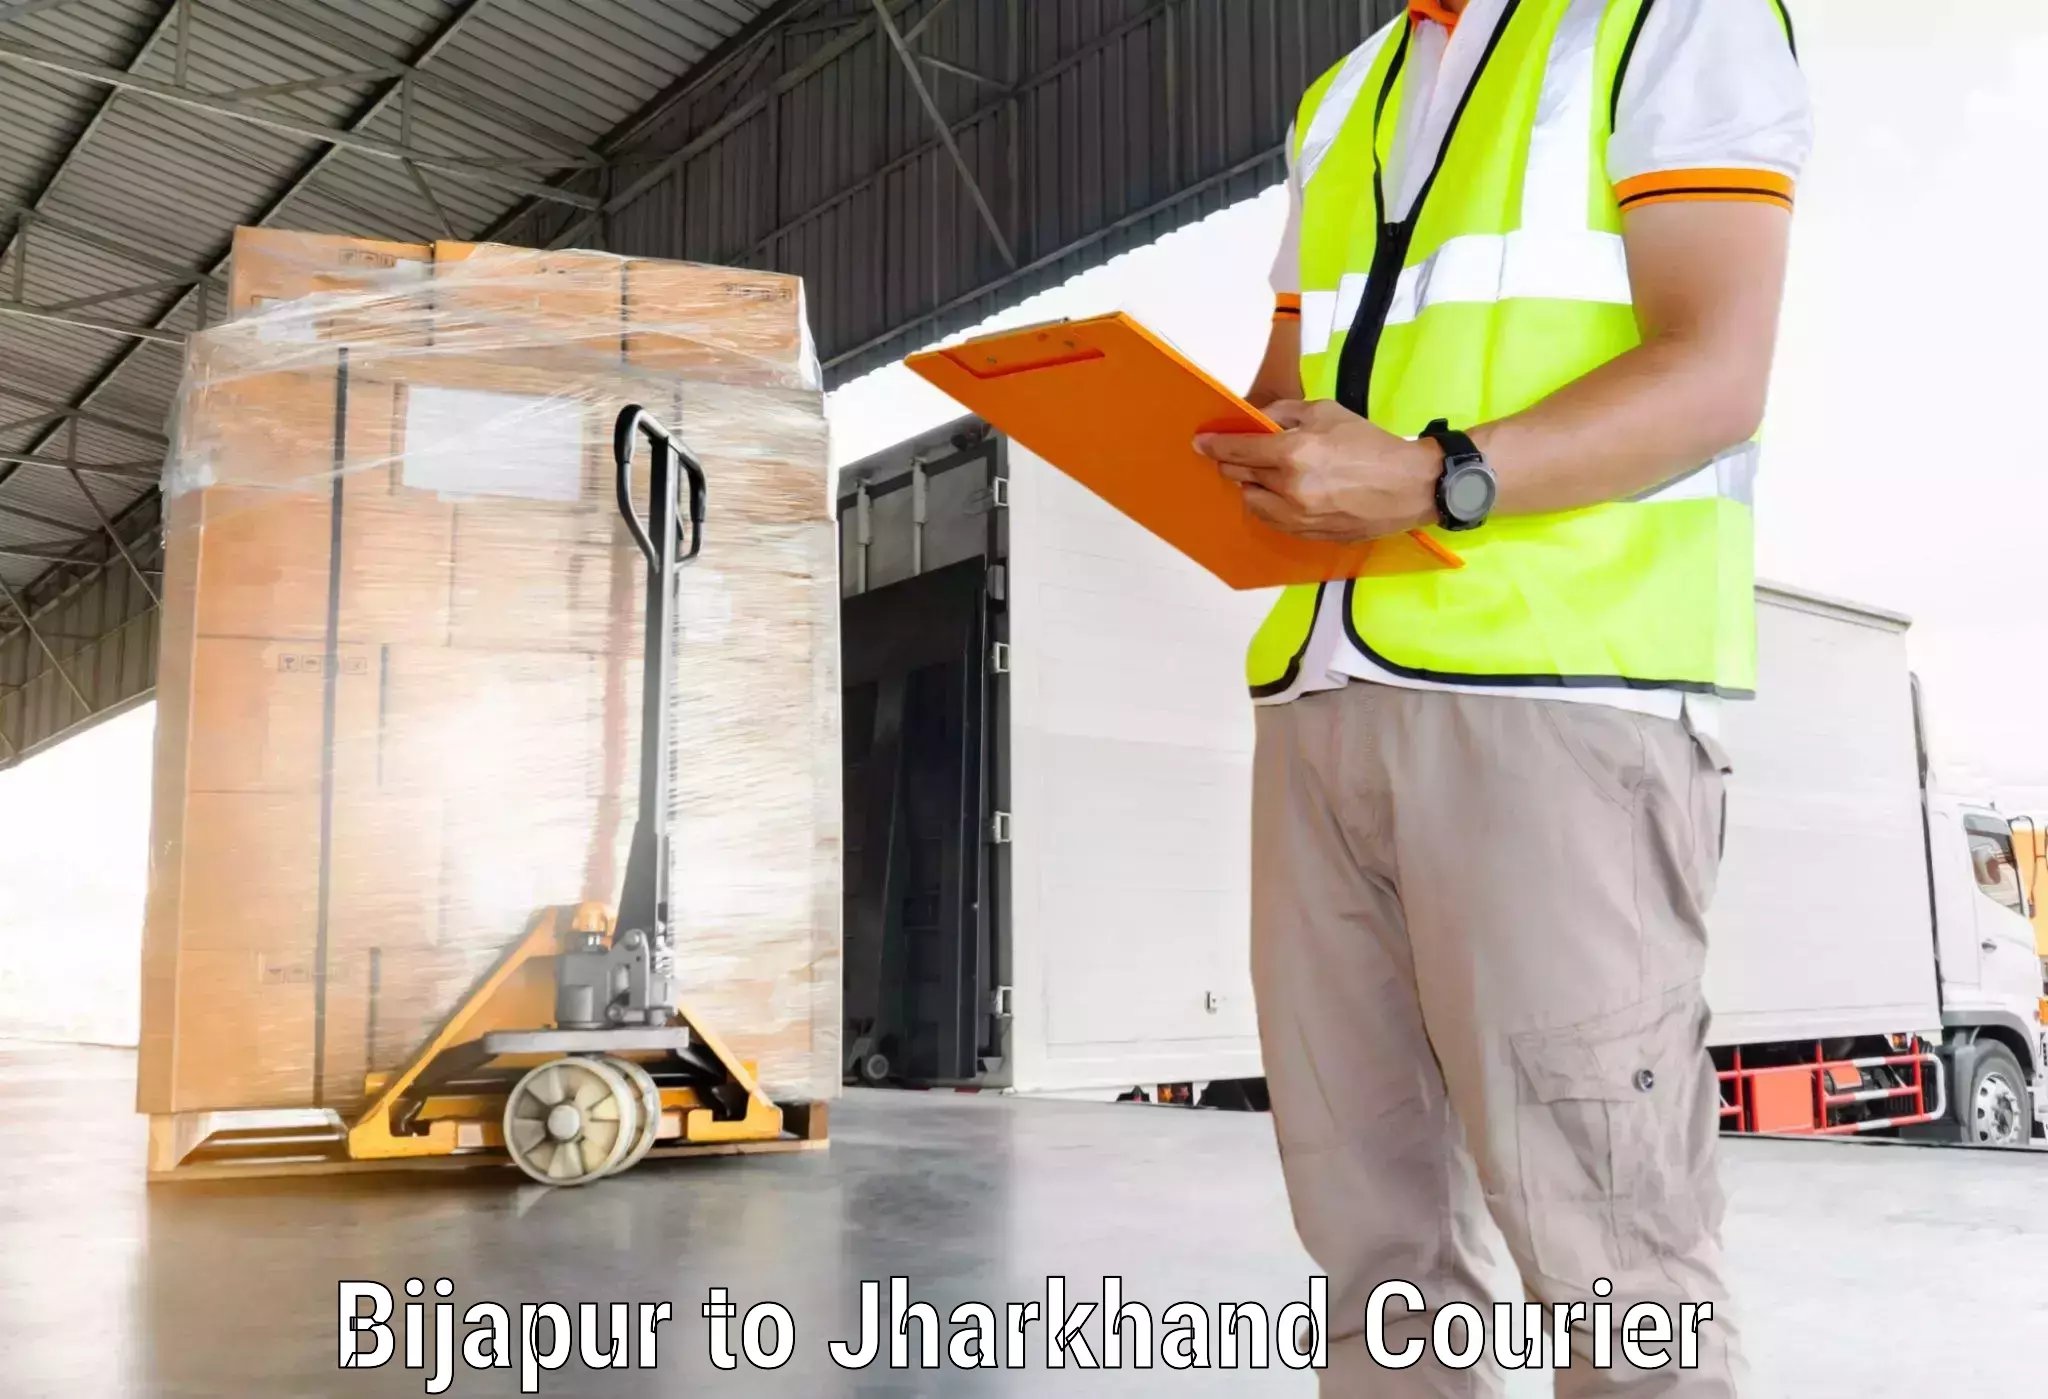 Affordable parcel rates Bijapur to Jamshedpur